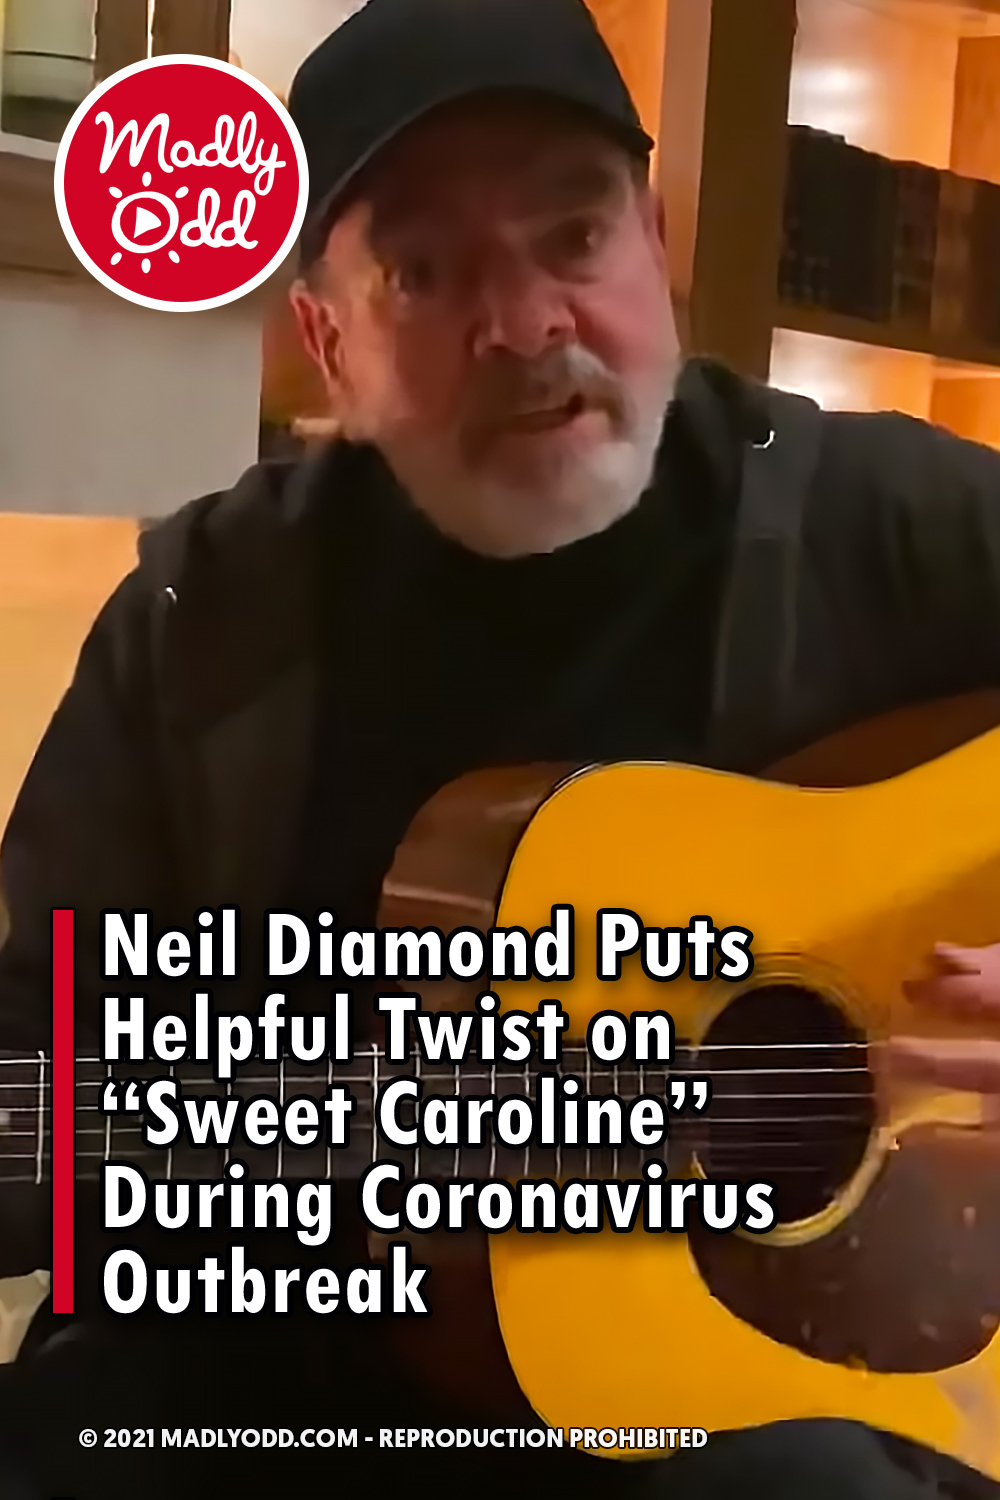 Neil Diamond Puts Helpful Twist on “Sweet Caroline” During Coronavirus Outbreak